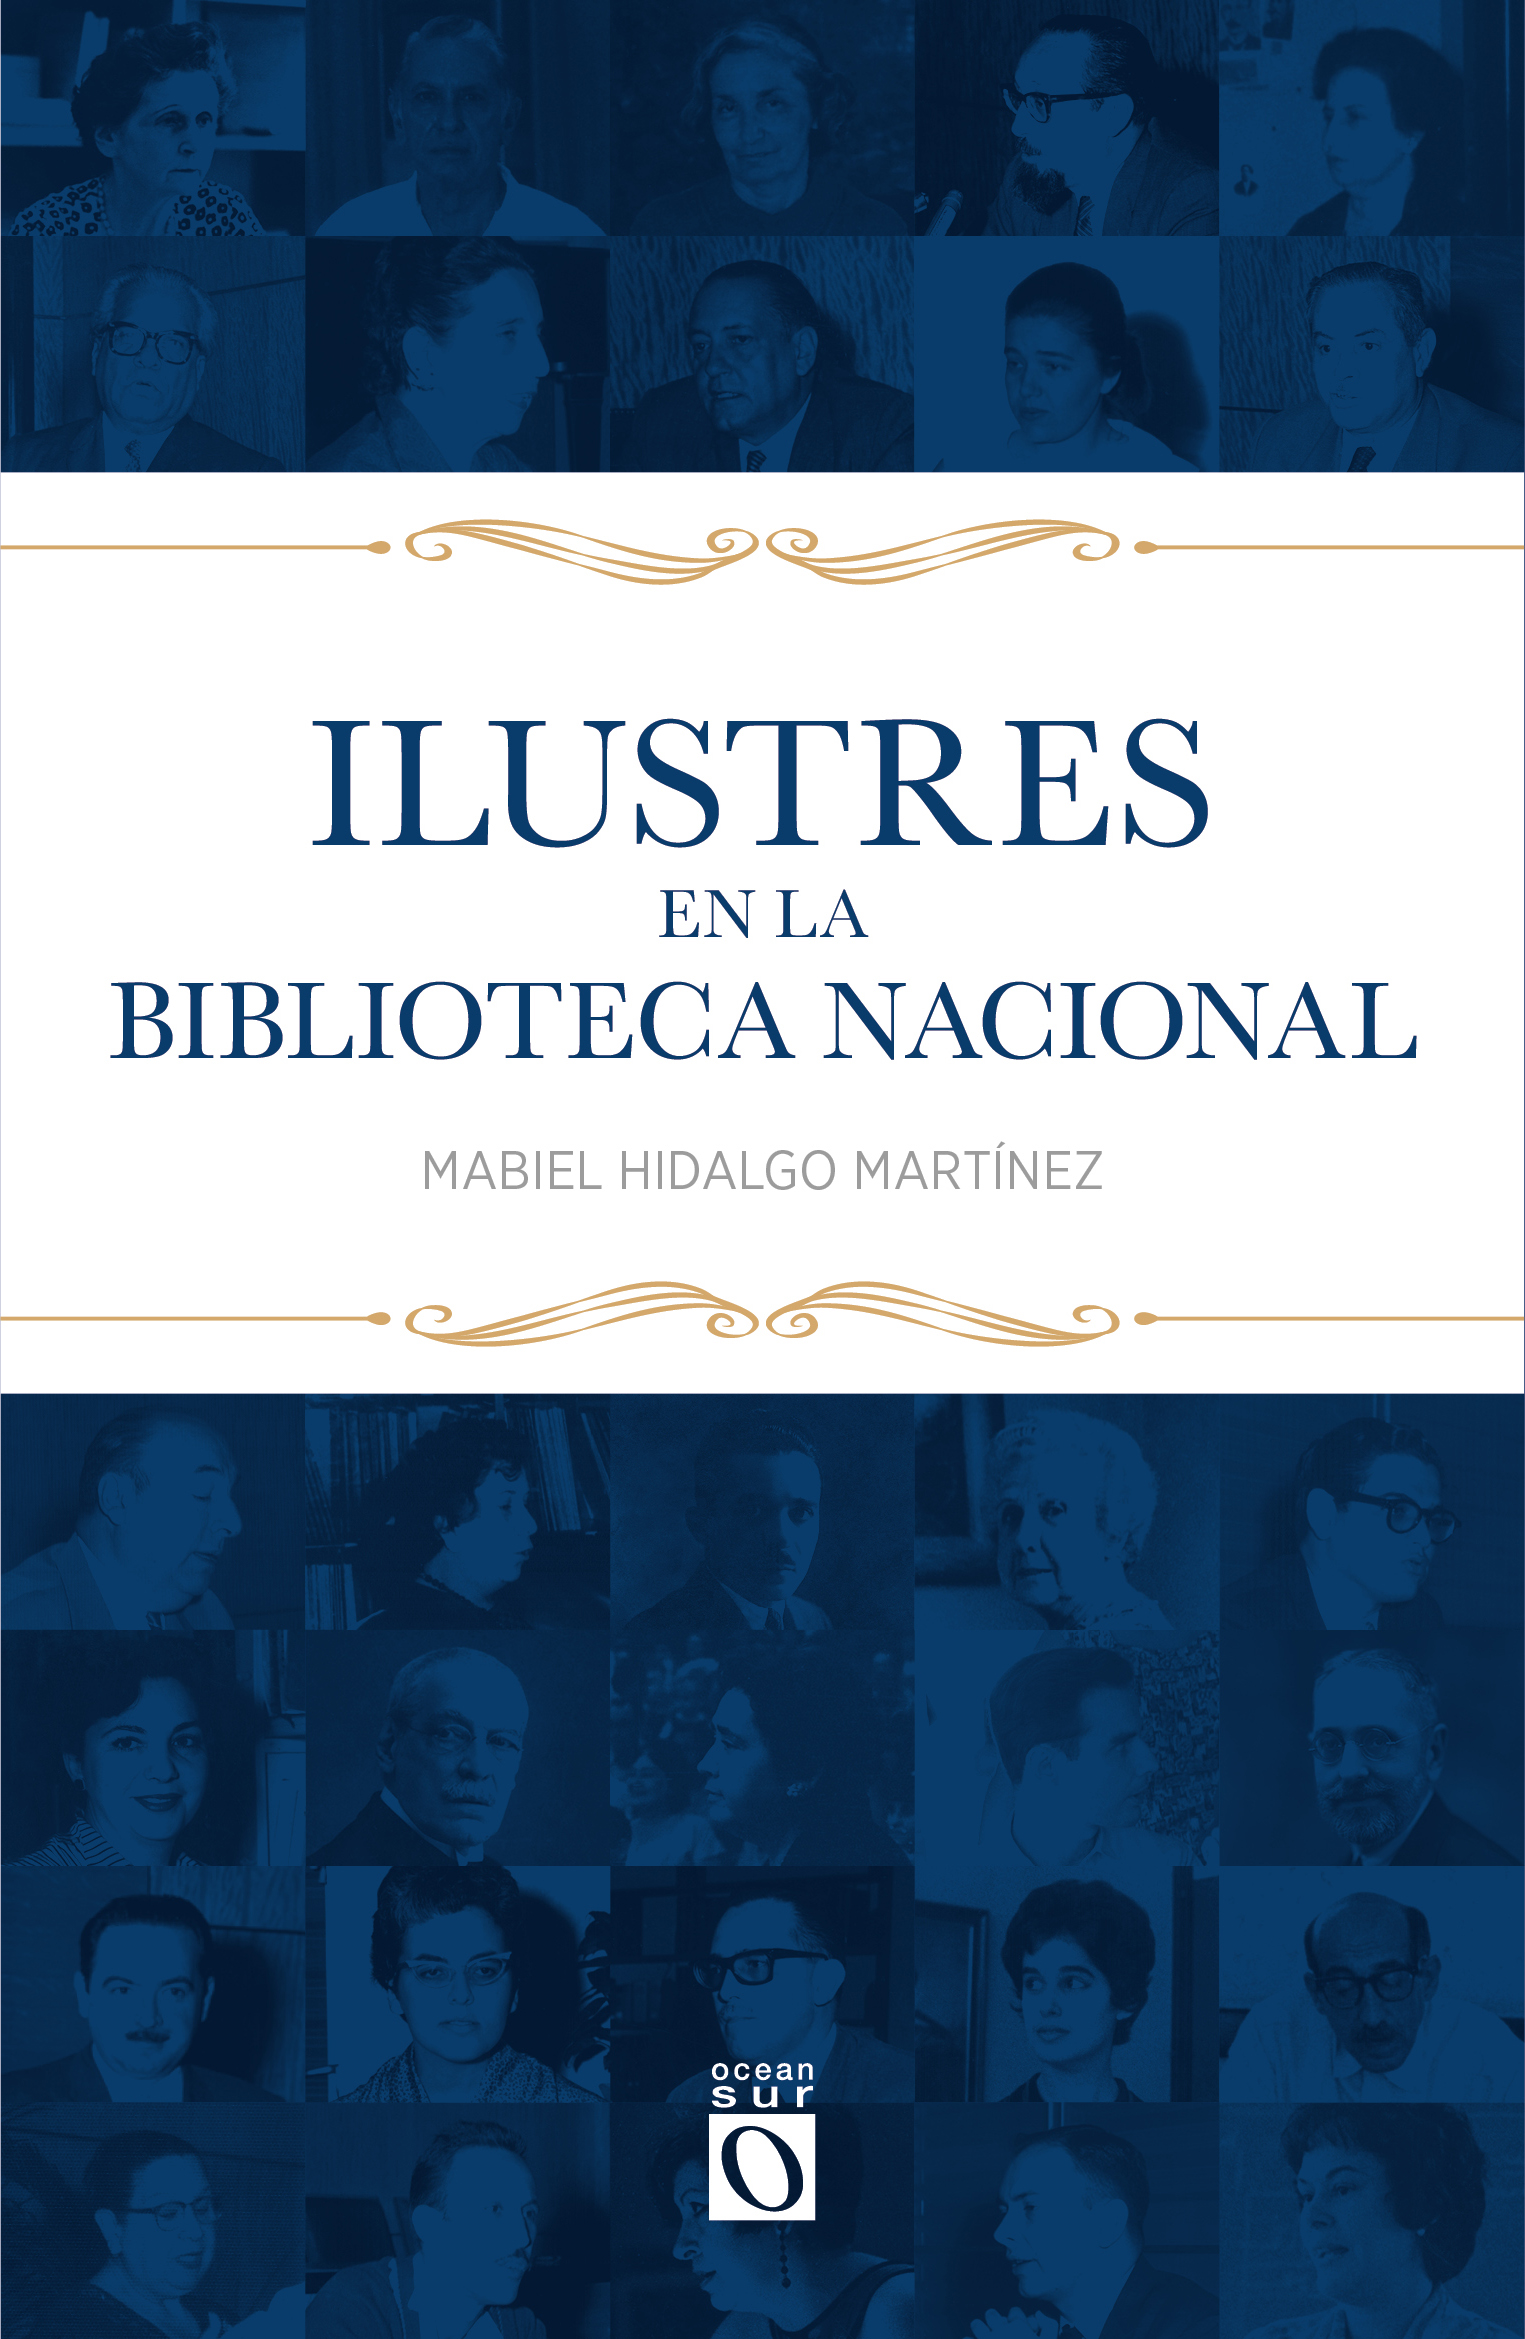 Ilustres  en la Biblioteca Nacional José Martí